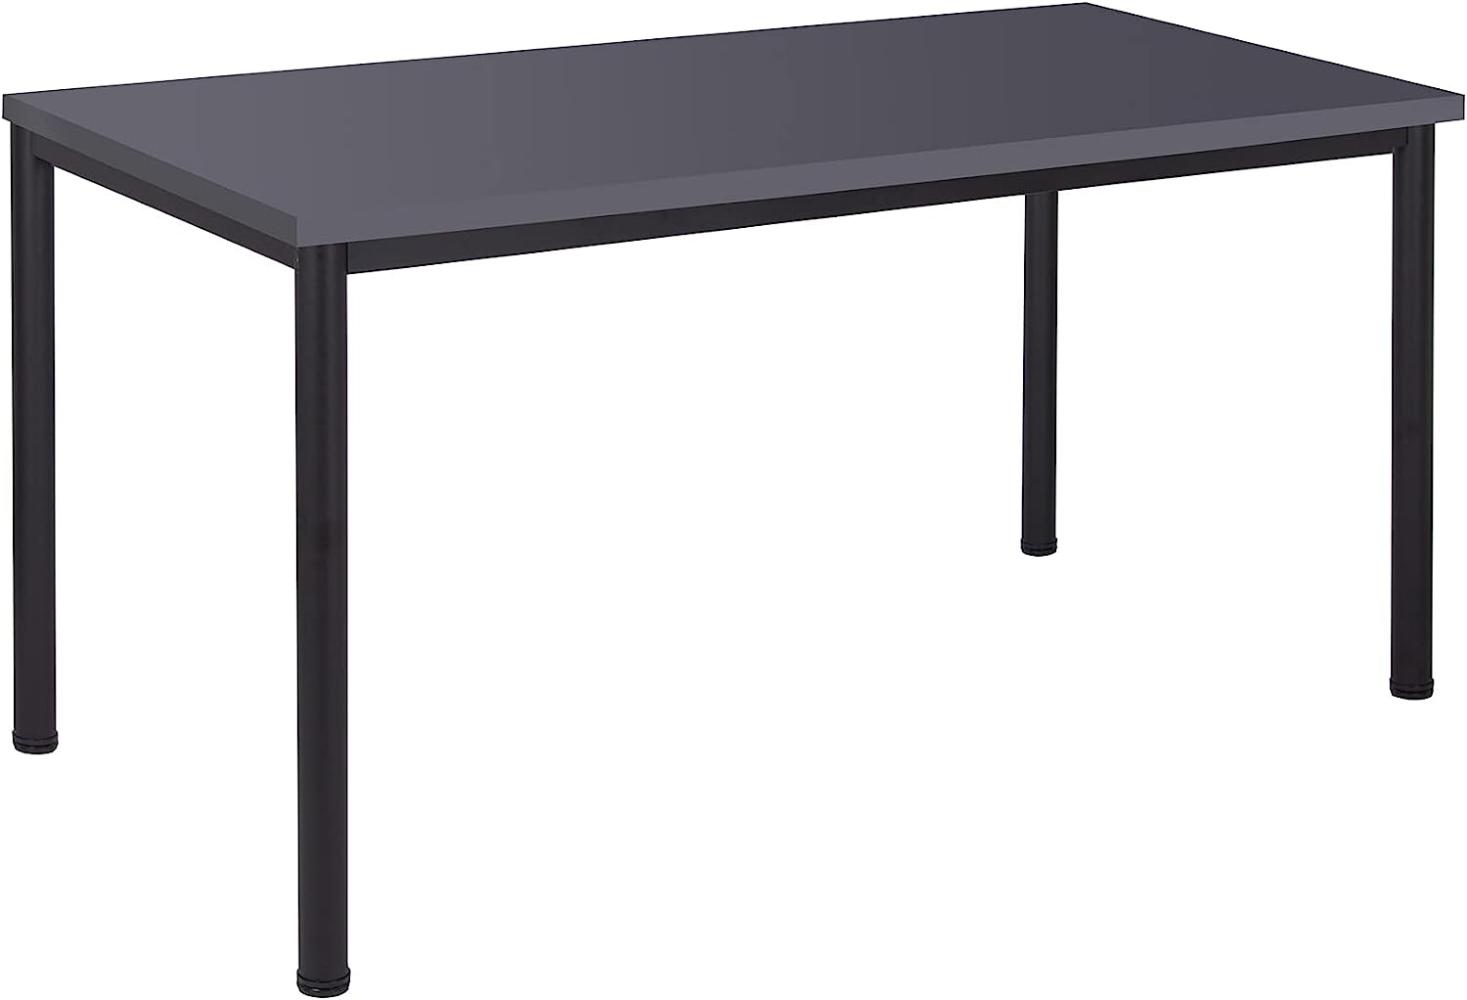 Schreibtisch u. Besprechungstisch mit schwarzem Tischgestell | Konferenztisch Bürotisch Computertisch Mehrzwecktisch Arbeitstisch PC-Tisch Homeoffice-Tisch (anthrazit, 200 x 80 x 77,5 cm) Bild 1